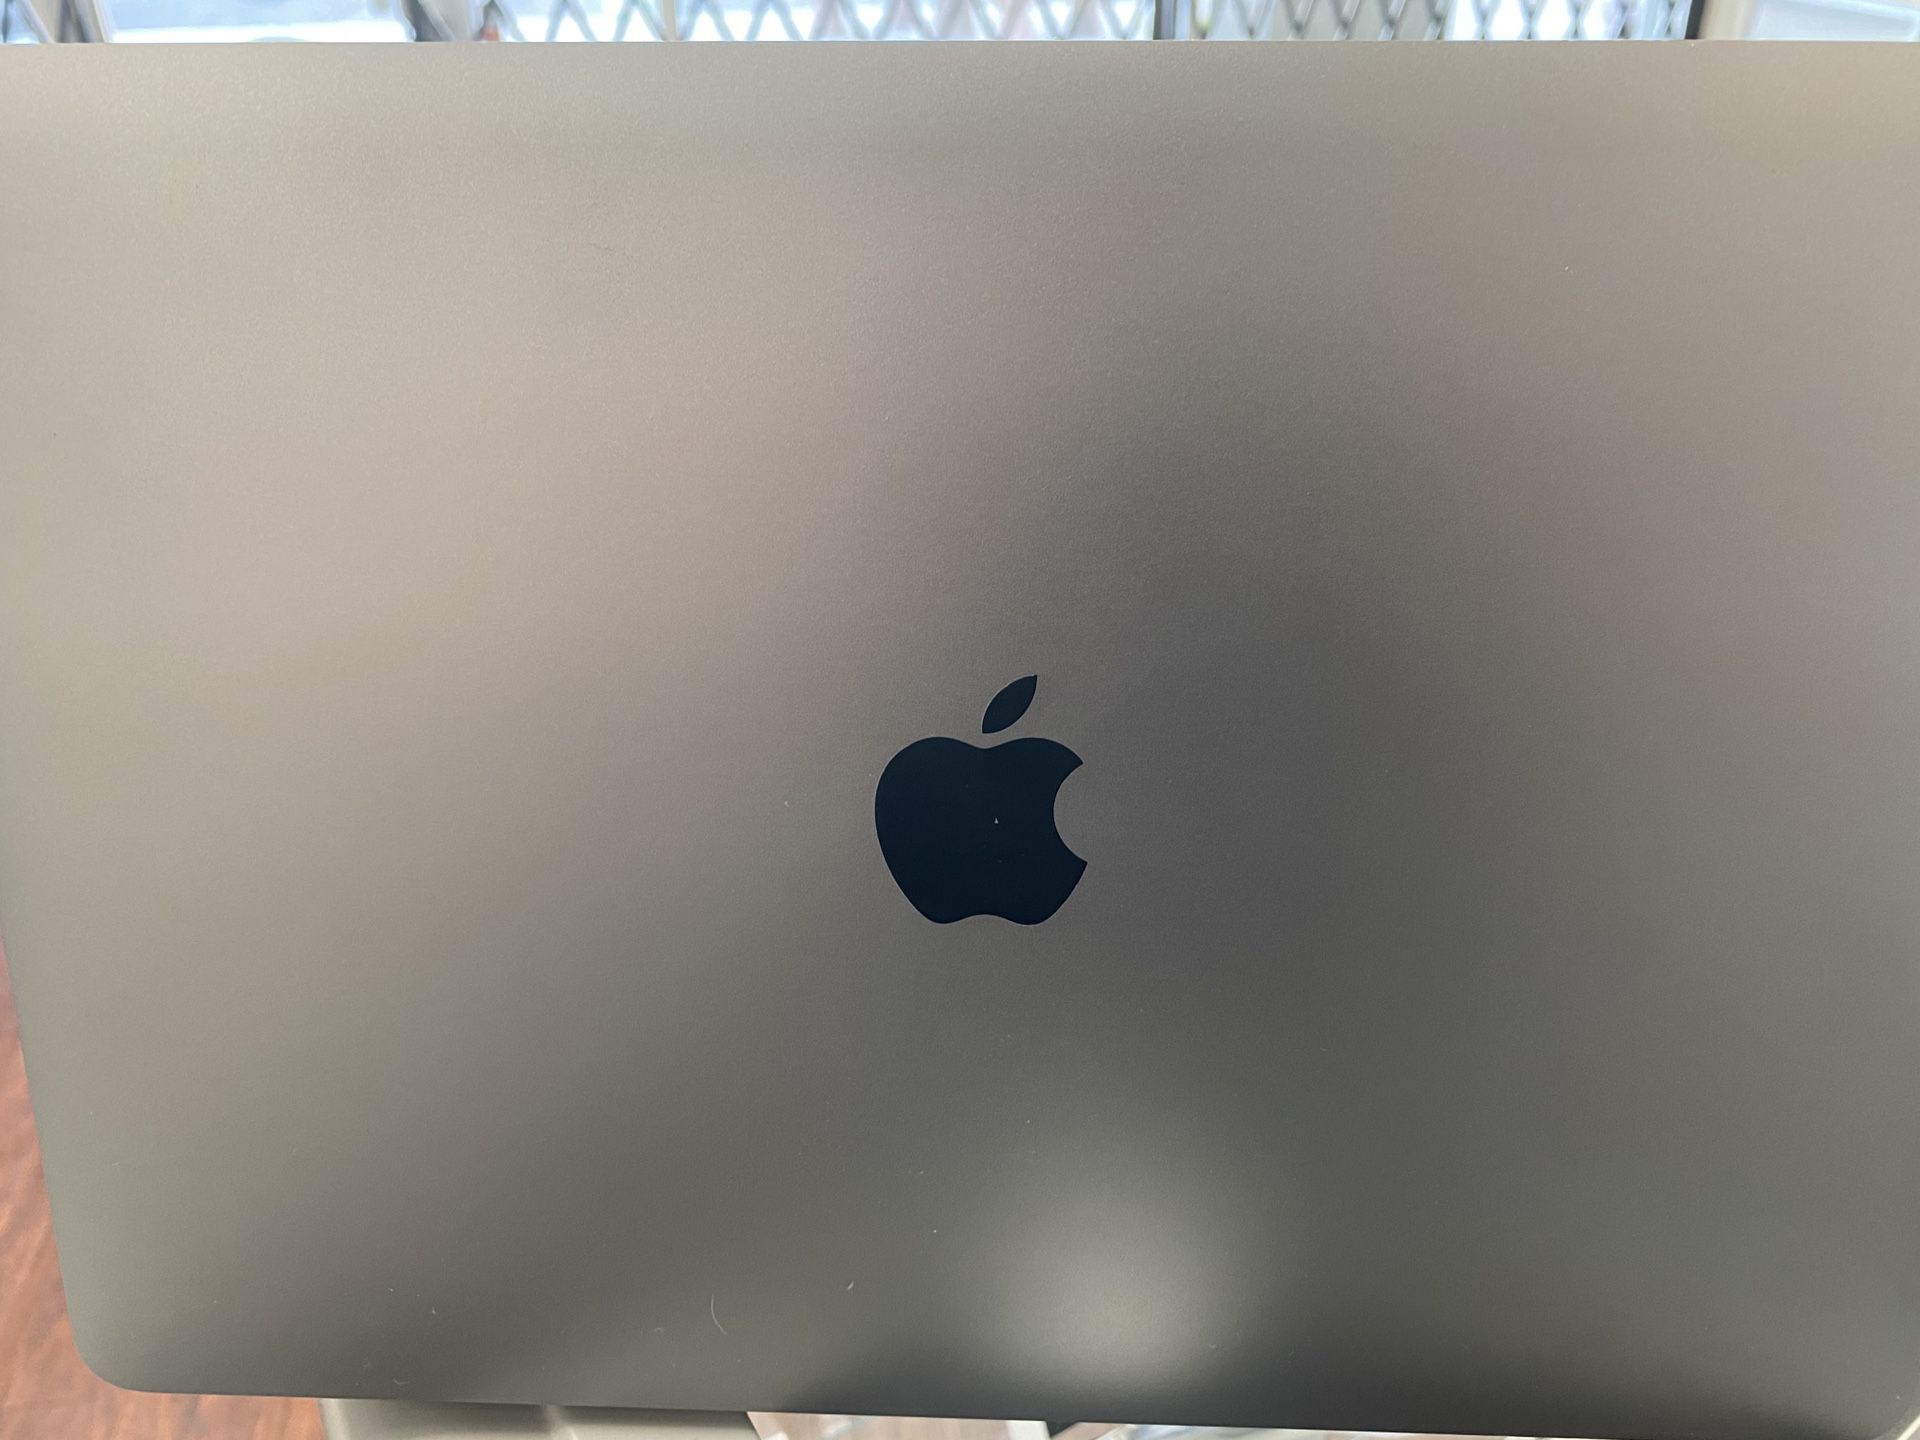 Macbook Pro 2018